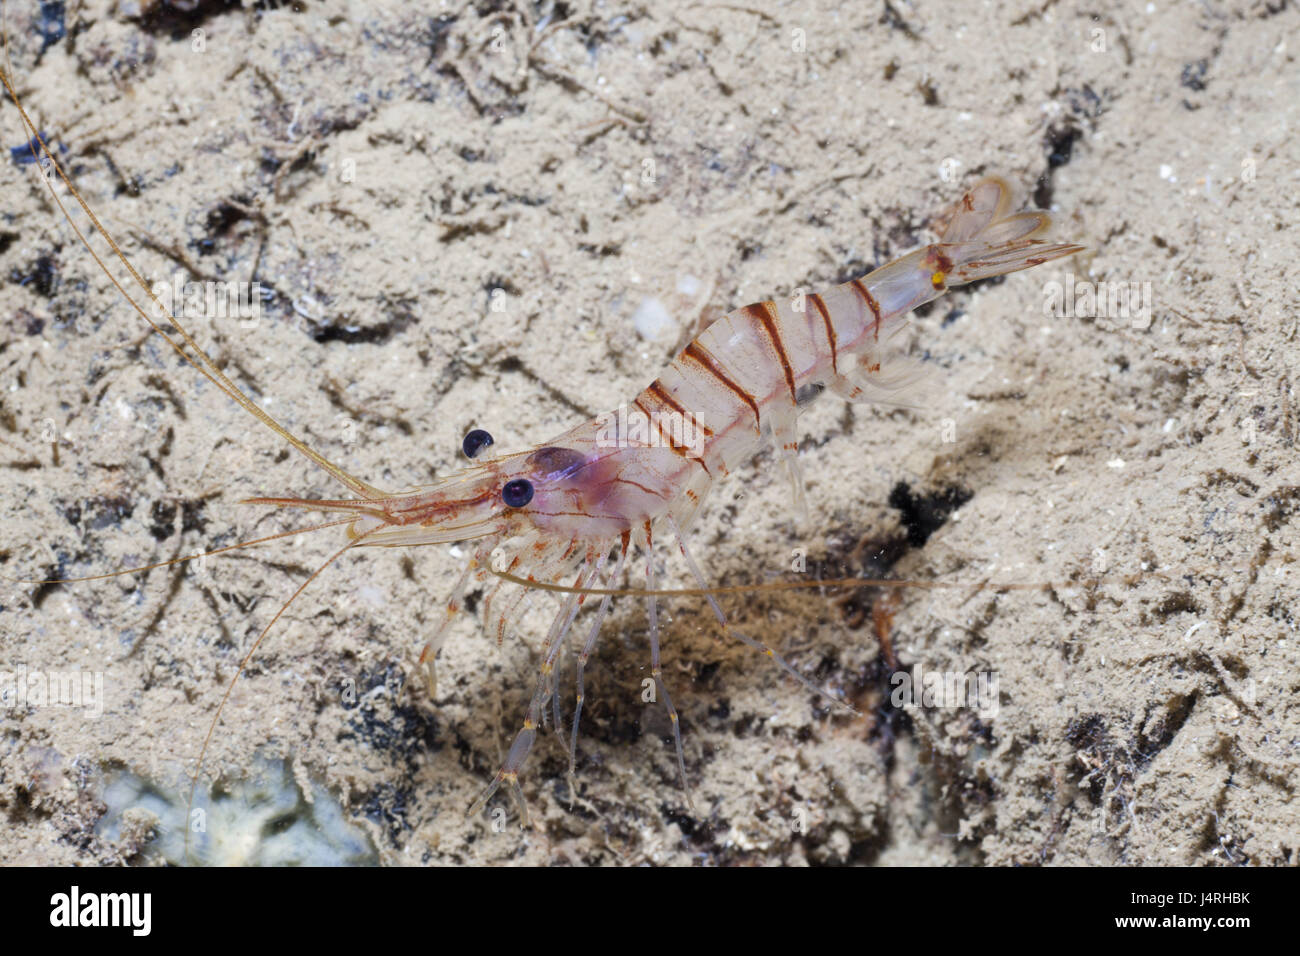 Big rock shrimp, Palaemon serratus, seabed, Stock Photo